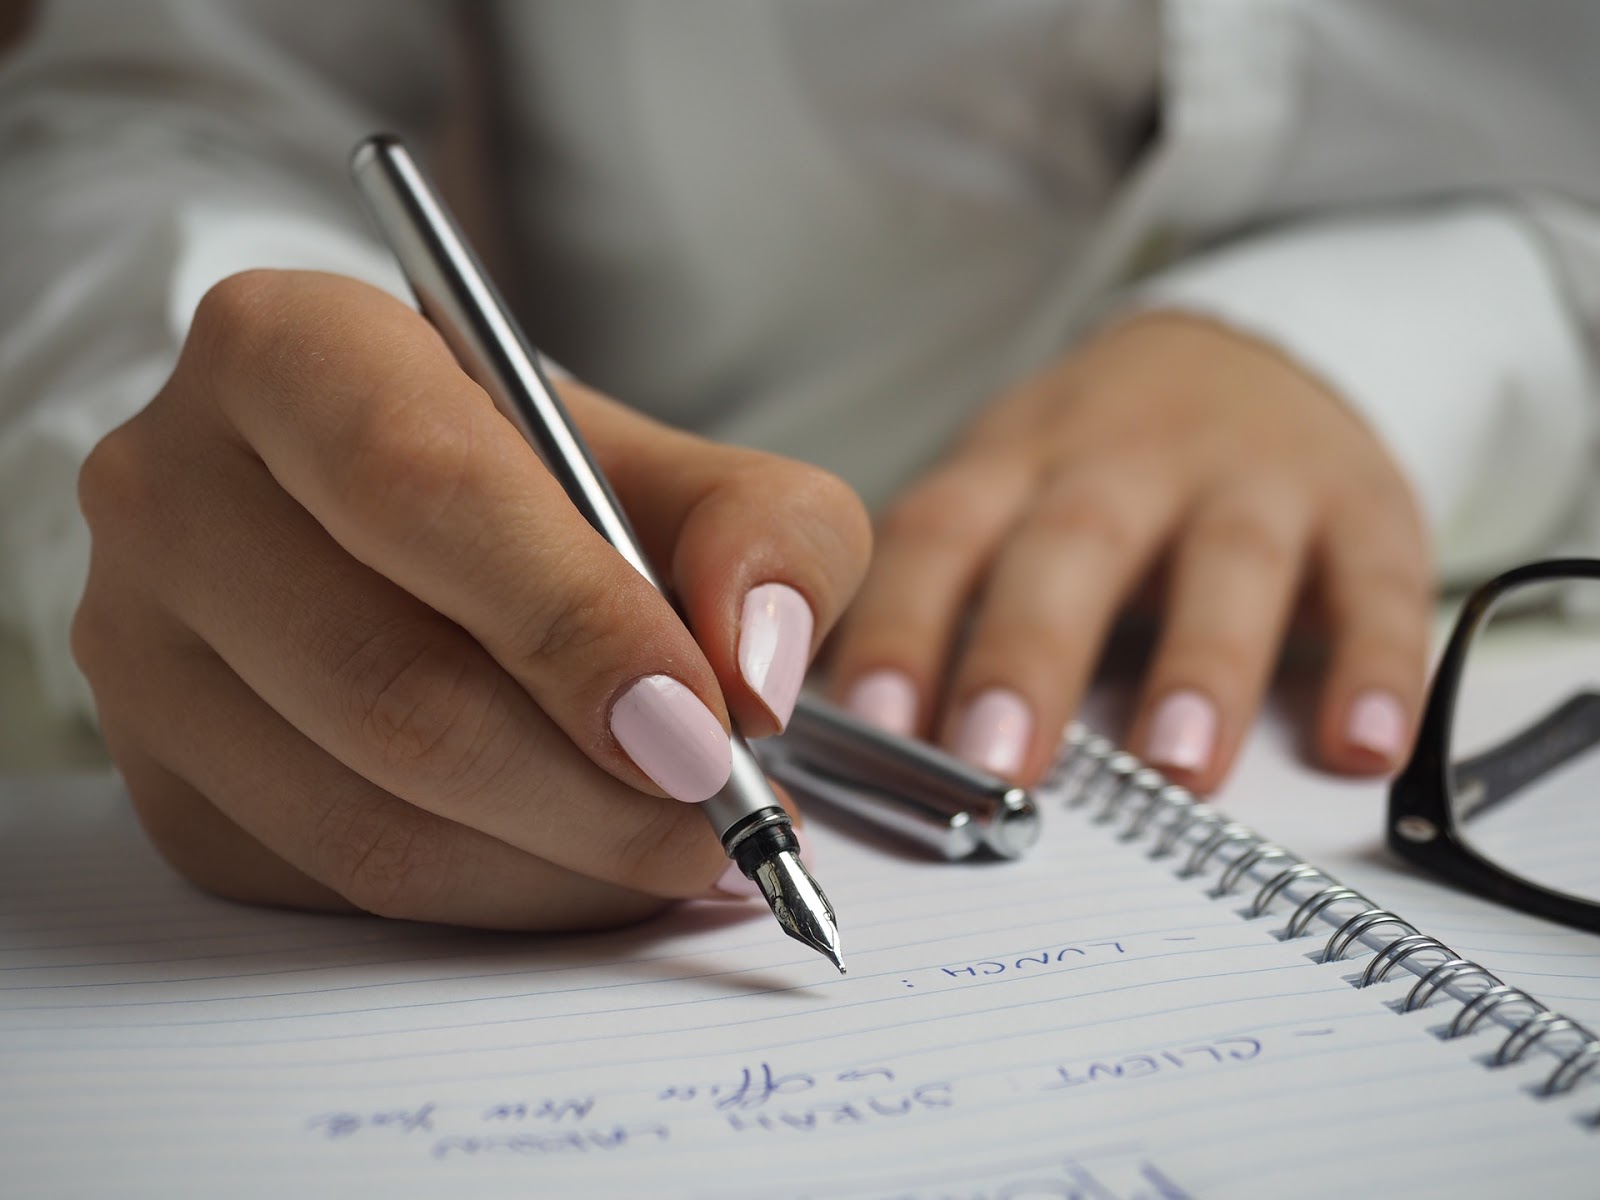 Habilidades de gestión del tiempo: las manos escriben en un cuaderno